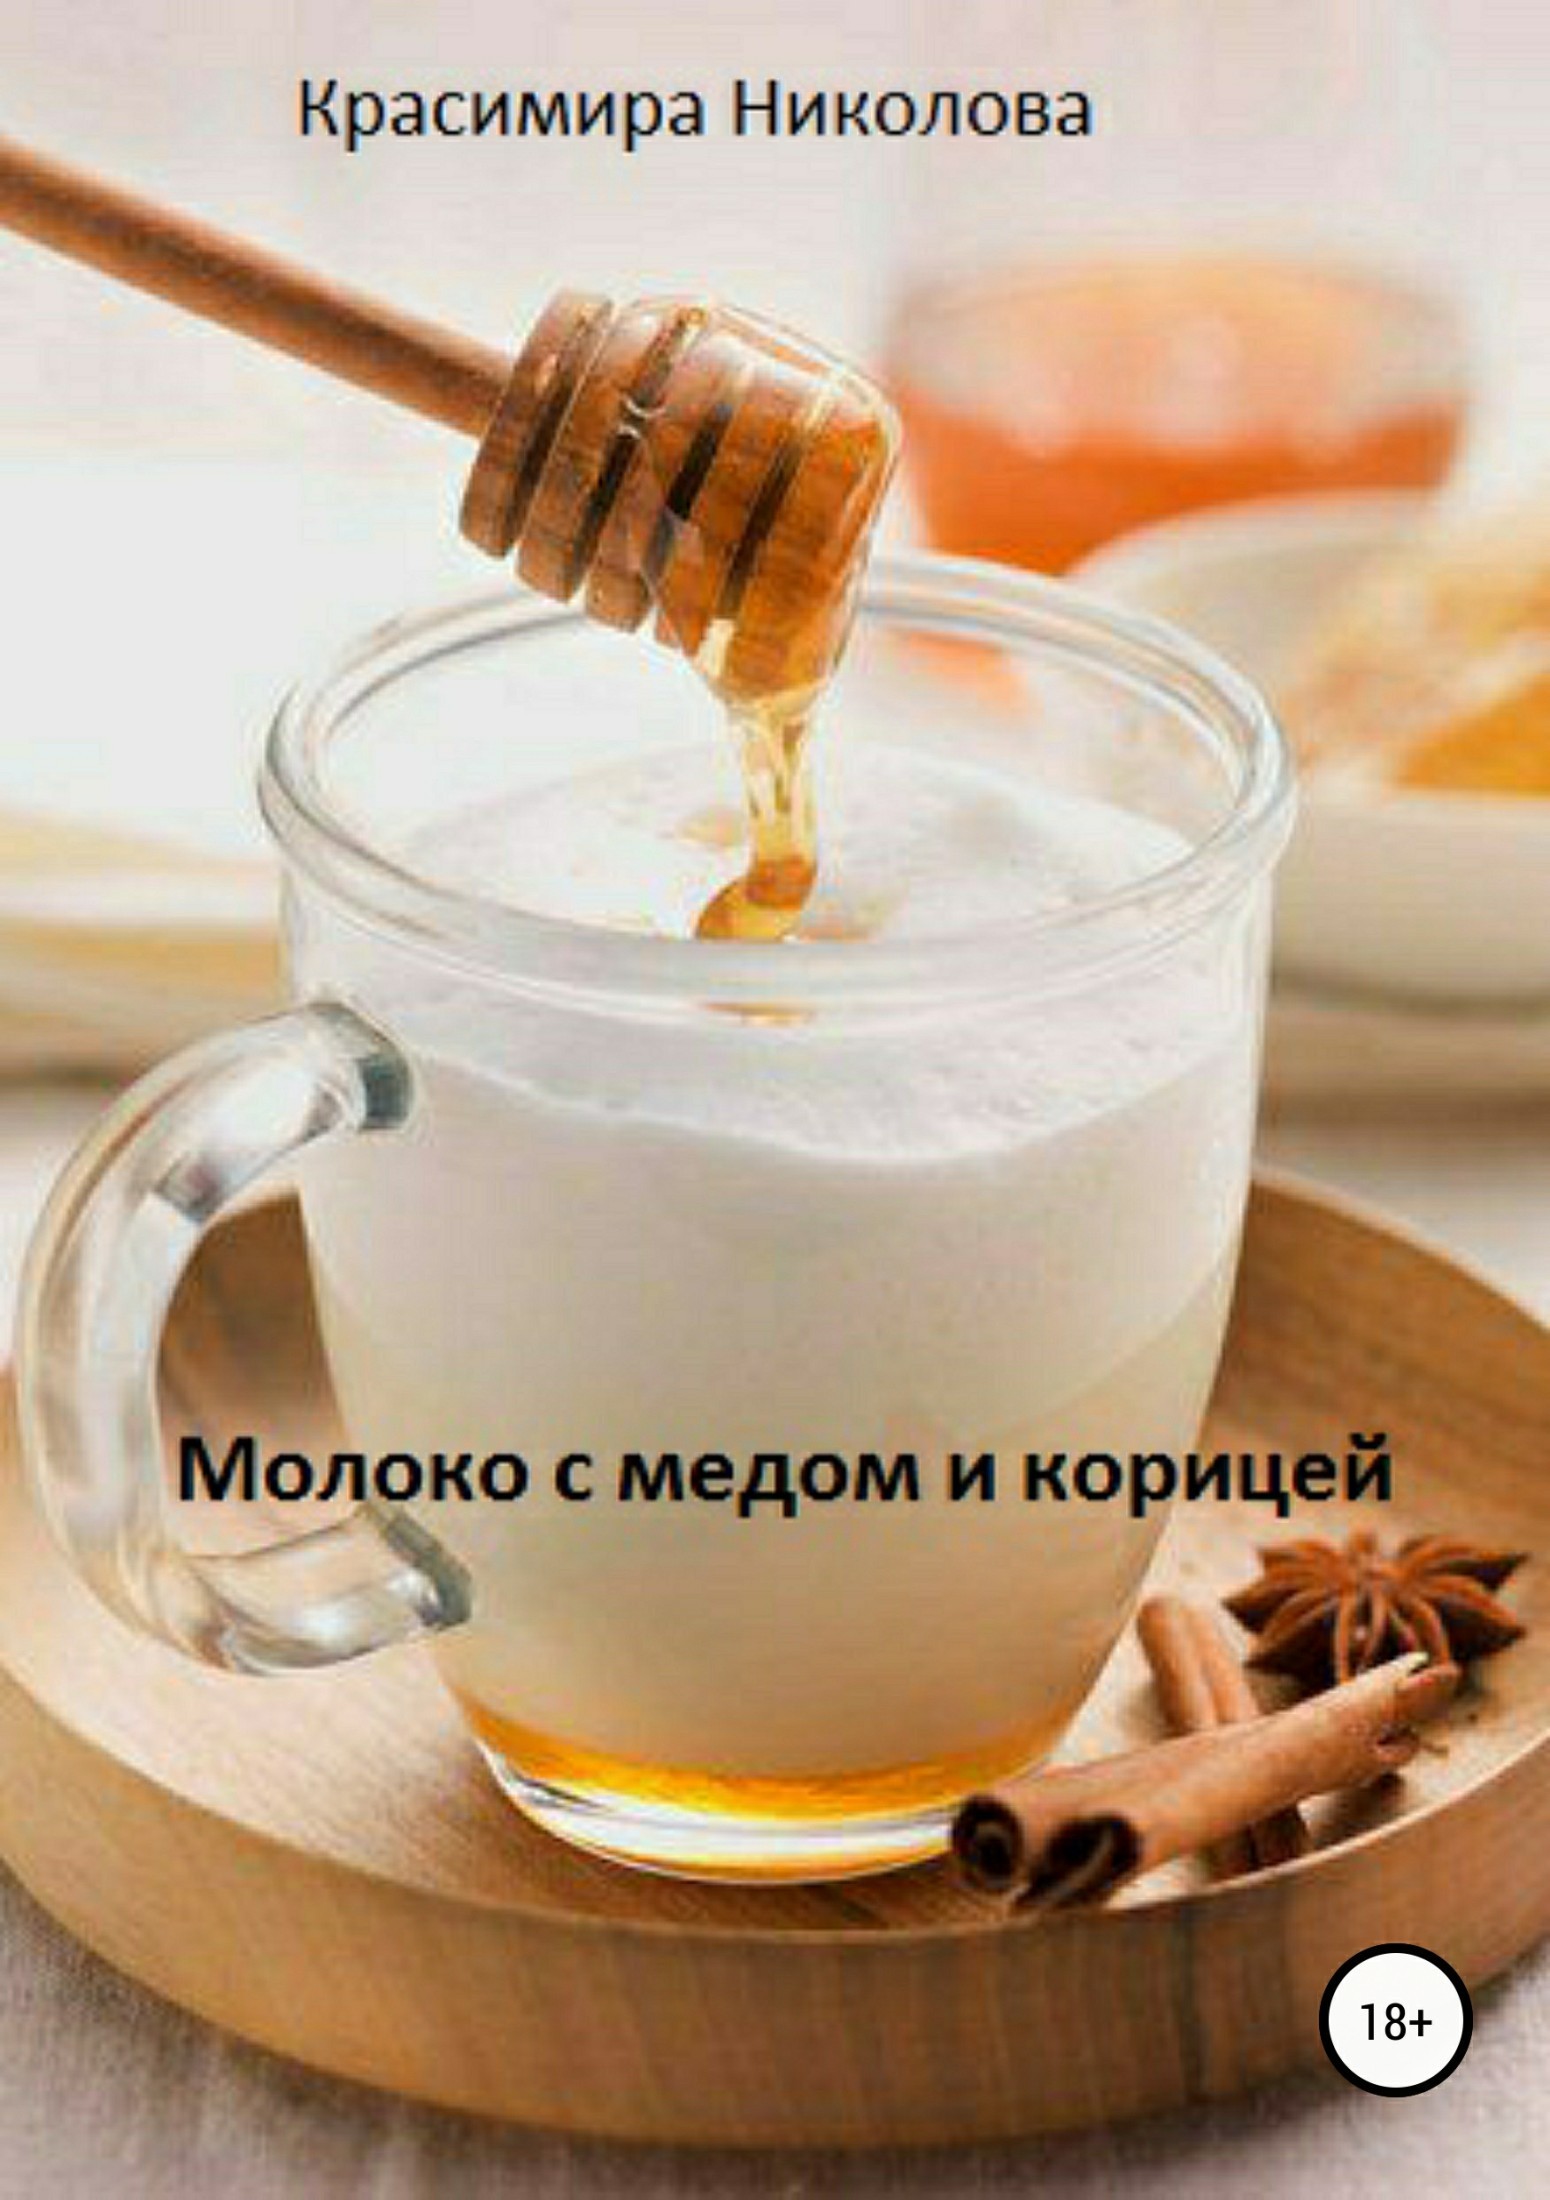 Красимира Асенова Николова Молоко с медом и корицей